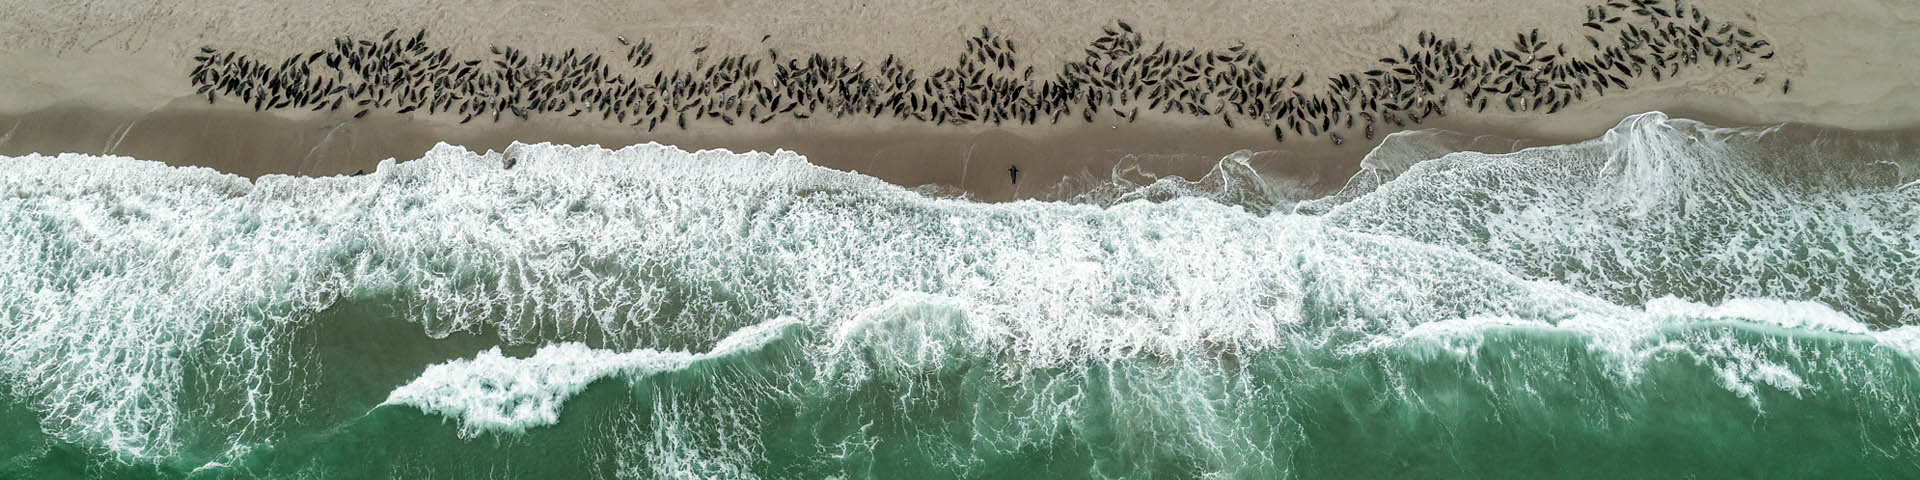 Photographie aérienne montrant des centaines de phoques rassemblés sur la plage sablonneuse tandis que les vagues se fracassent sur la rive près d'eux.